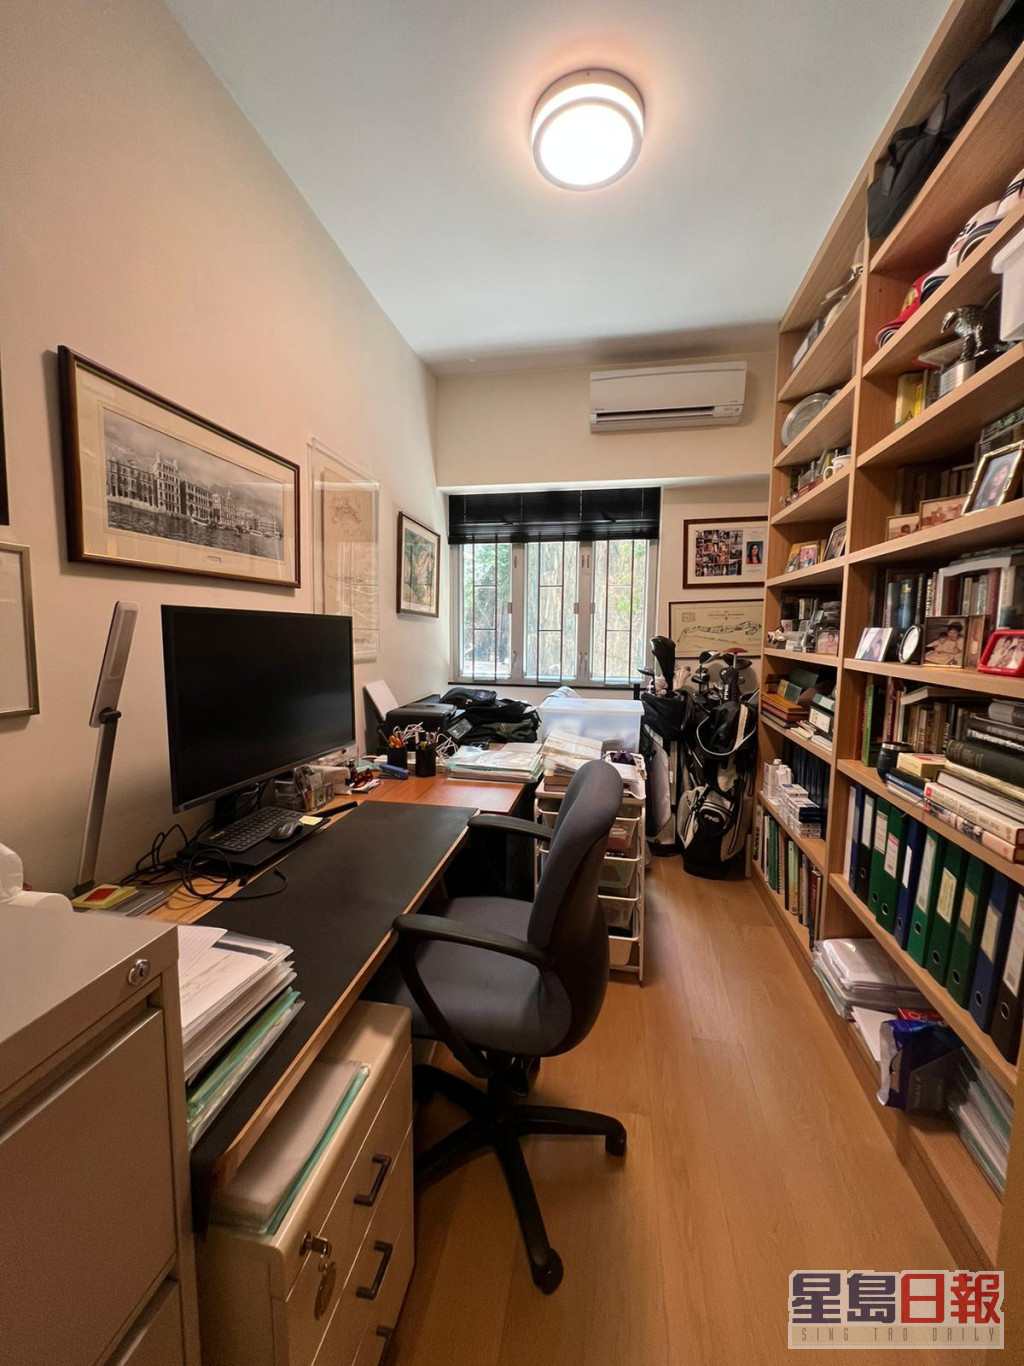 其中一房布置成書房應用，書枱及書櫃分別靠牆而置。